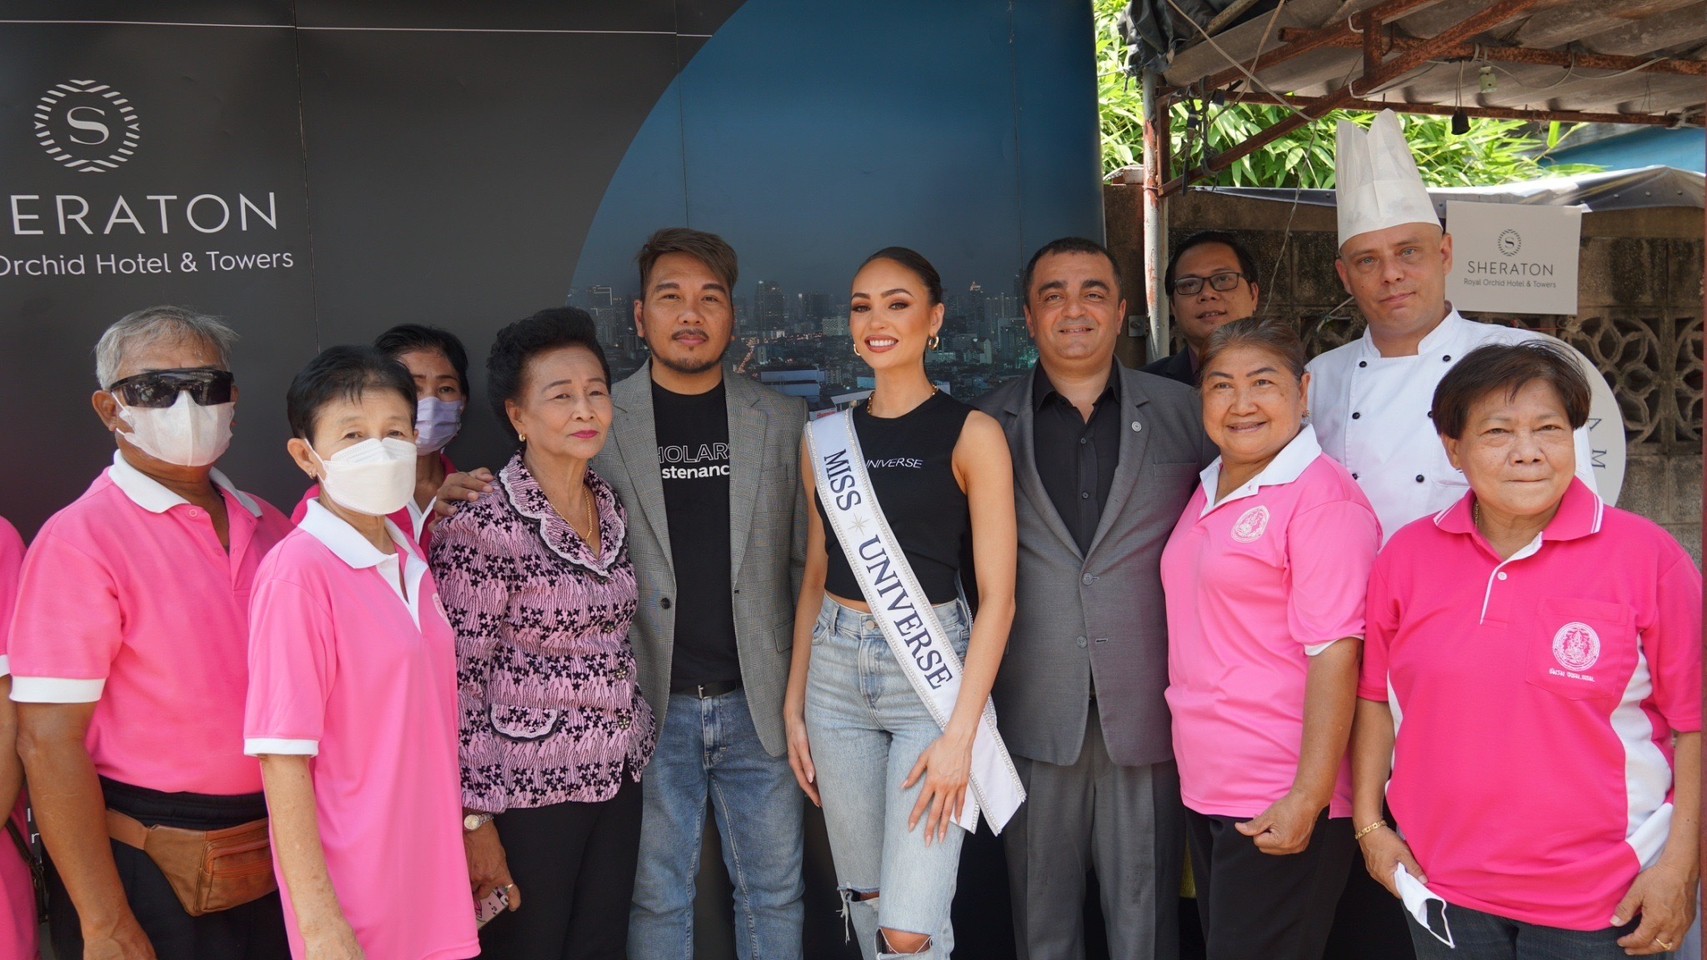 อาร์บอนนีย์ เกเบรียล Miss Universe 2022